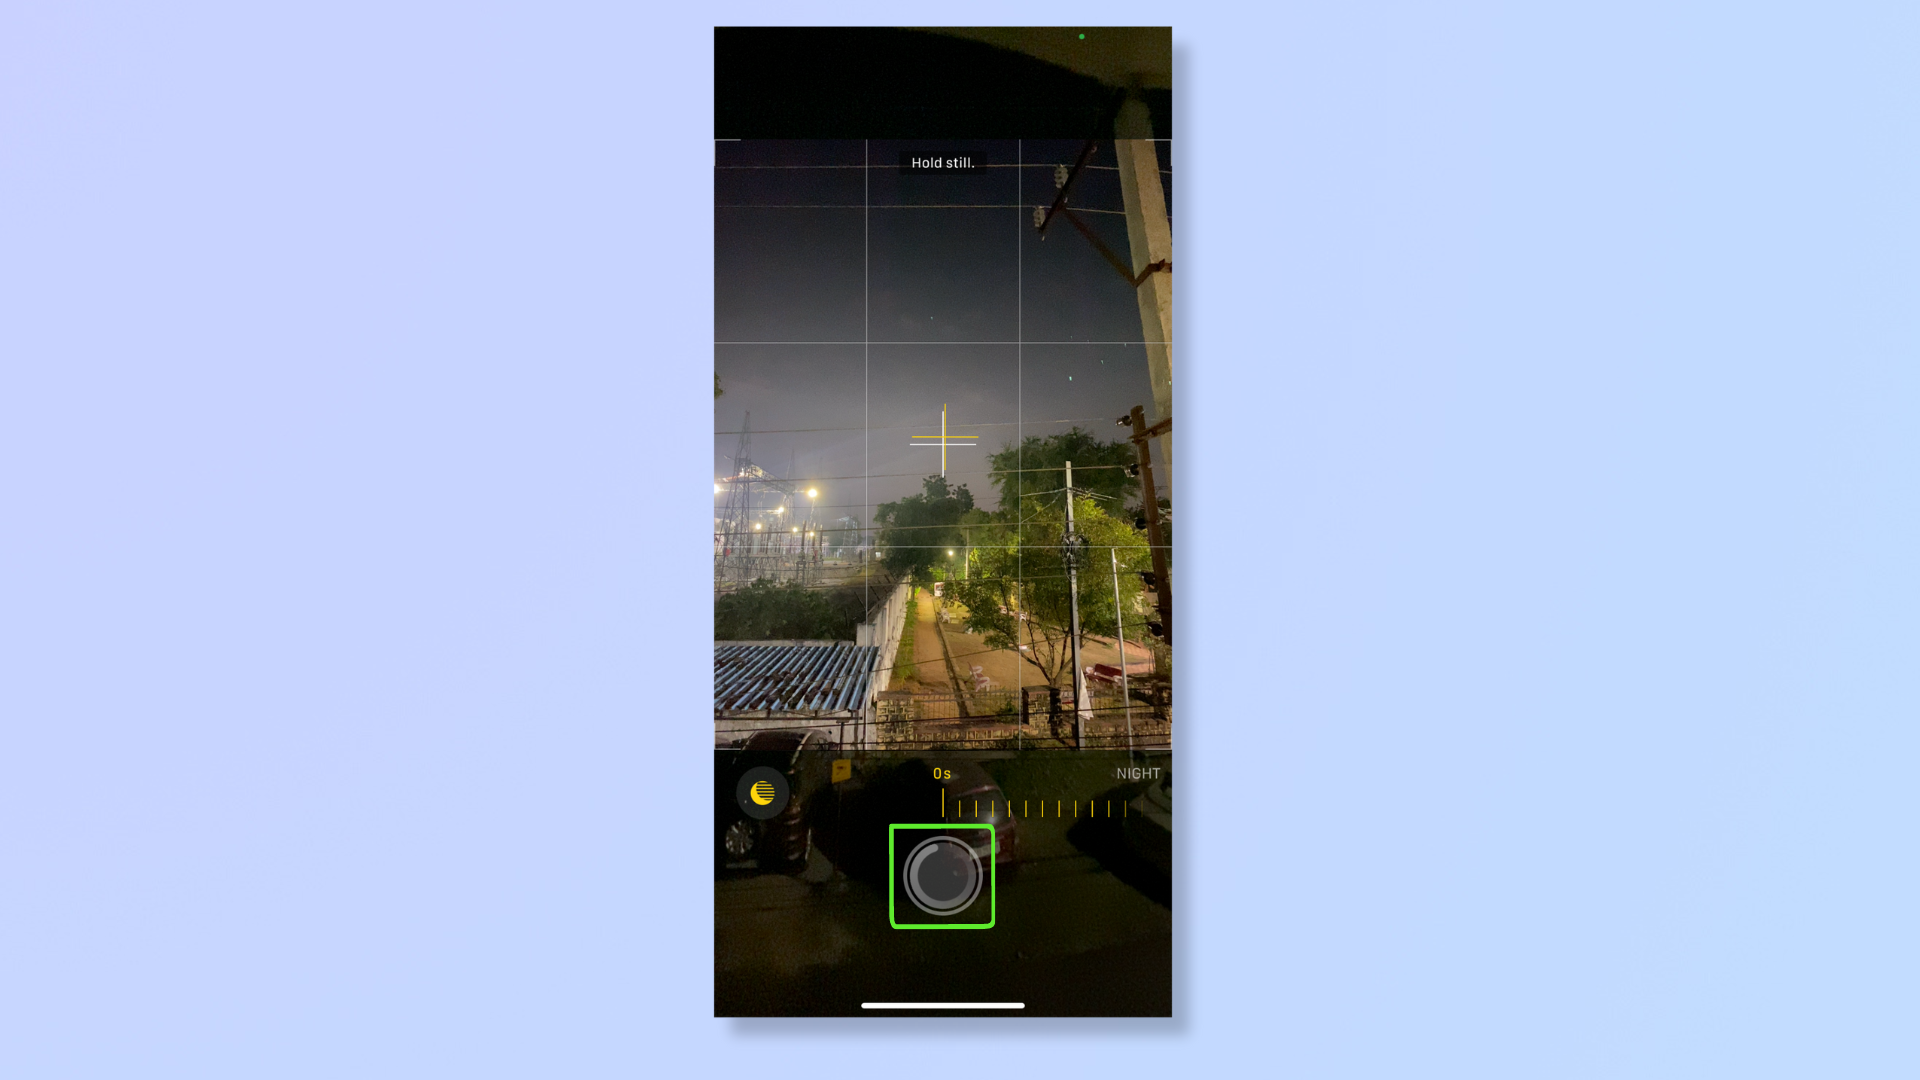 Скриншот приложения «Камера» на iPhone с выделенной кнопкой спуска затвора.